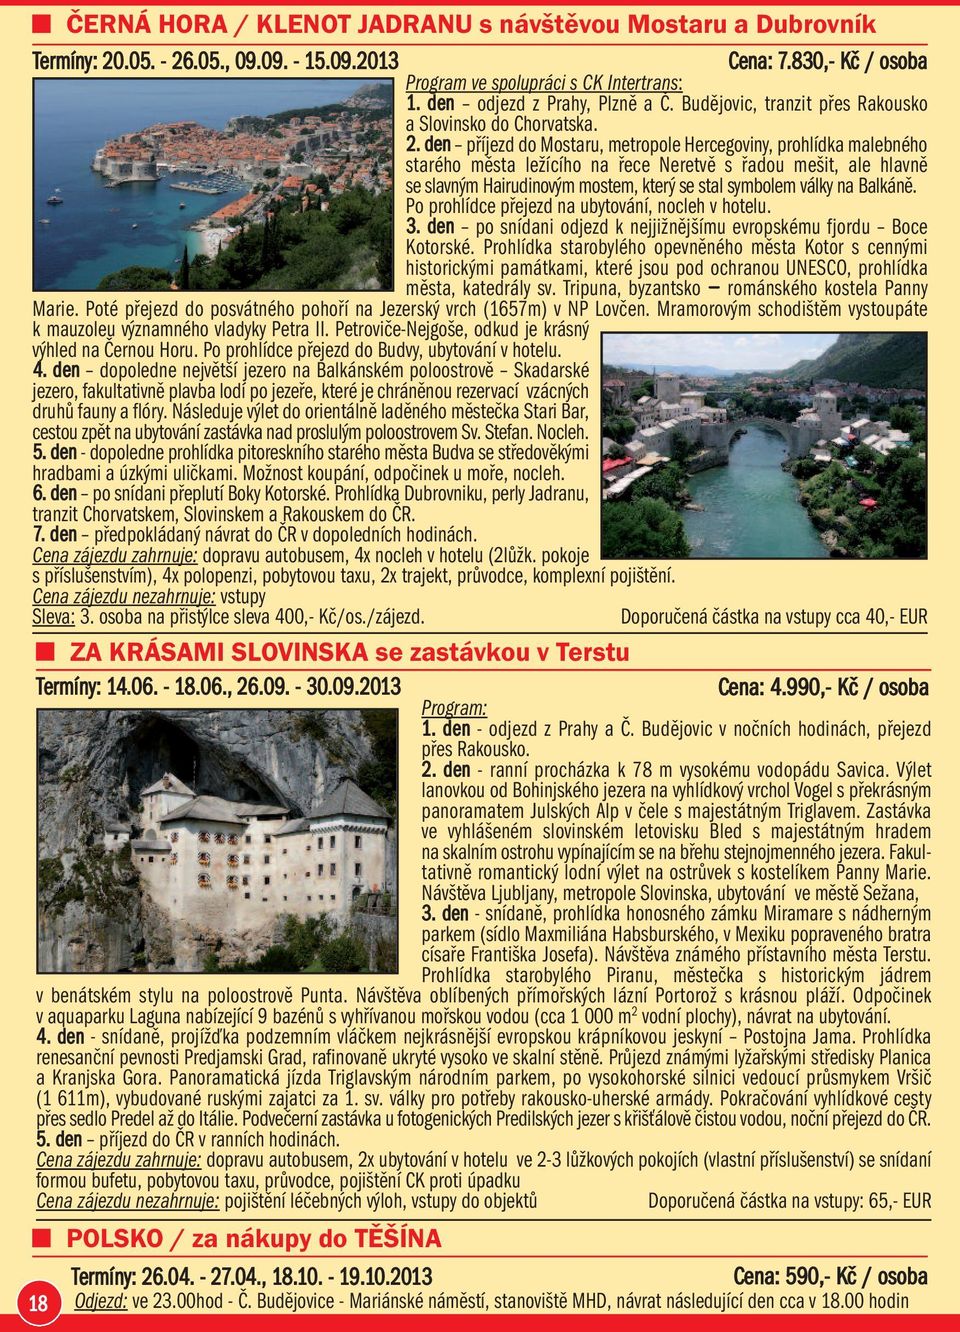 den příjezd do Mostaru, metropole Hercegoviny, prohlídka malebného starého města ležícího na řece Neretvě s řadou mešit, ale hlavně se slavným Hairudinovým mostem, který se stal symbolem války na